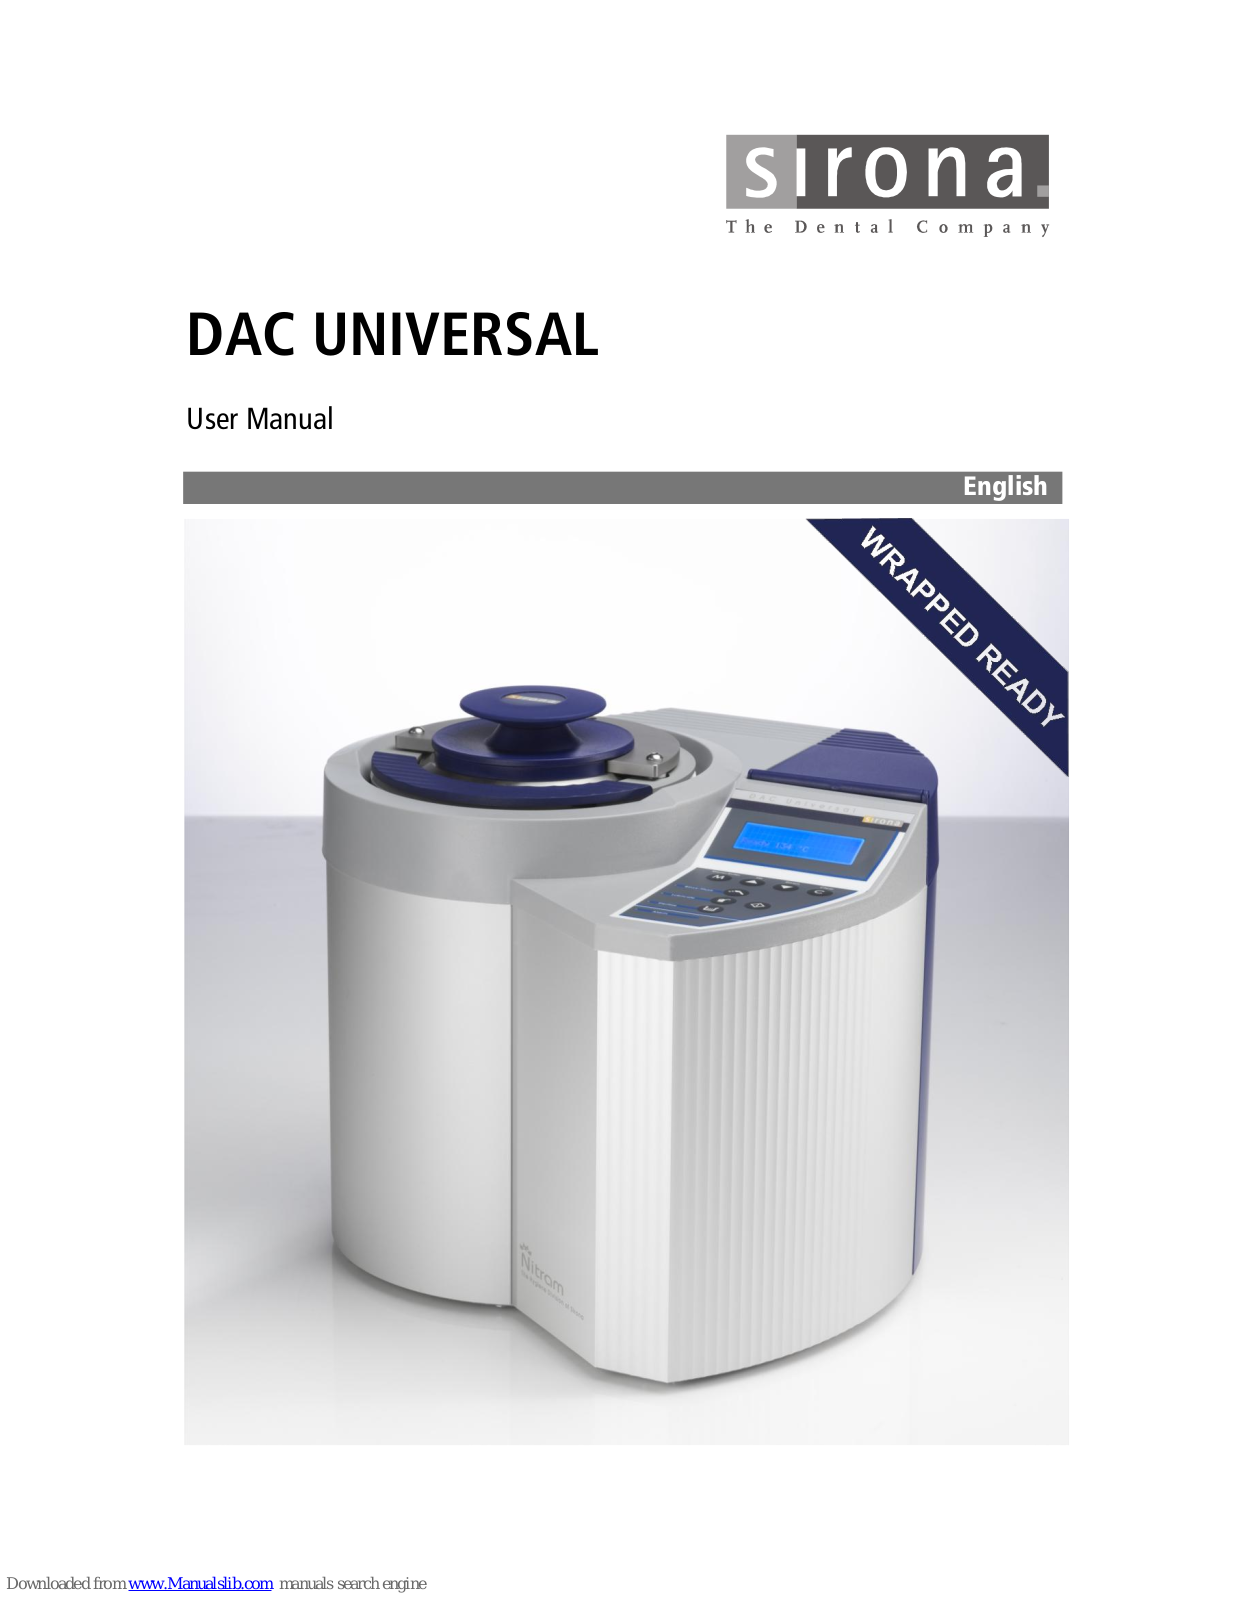 Sirona DAC Universal User Manual